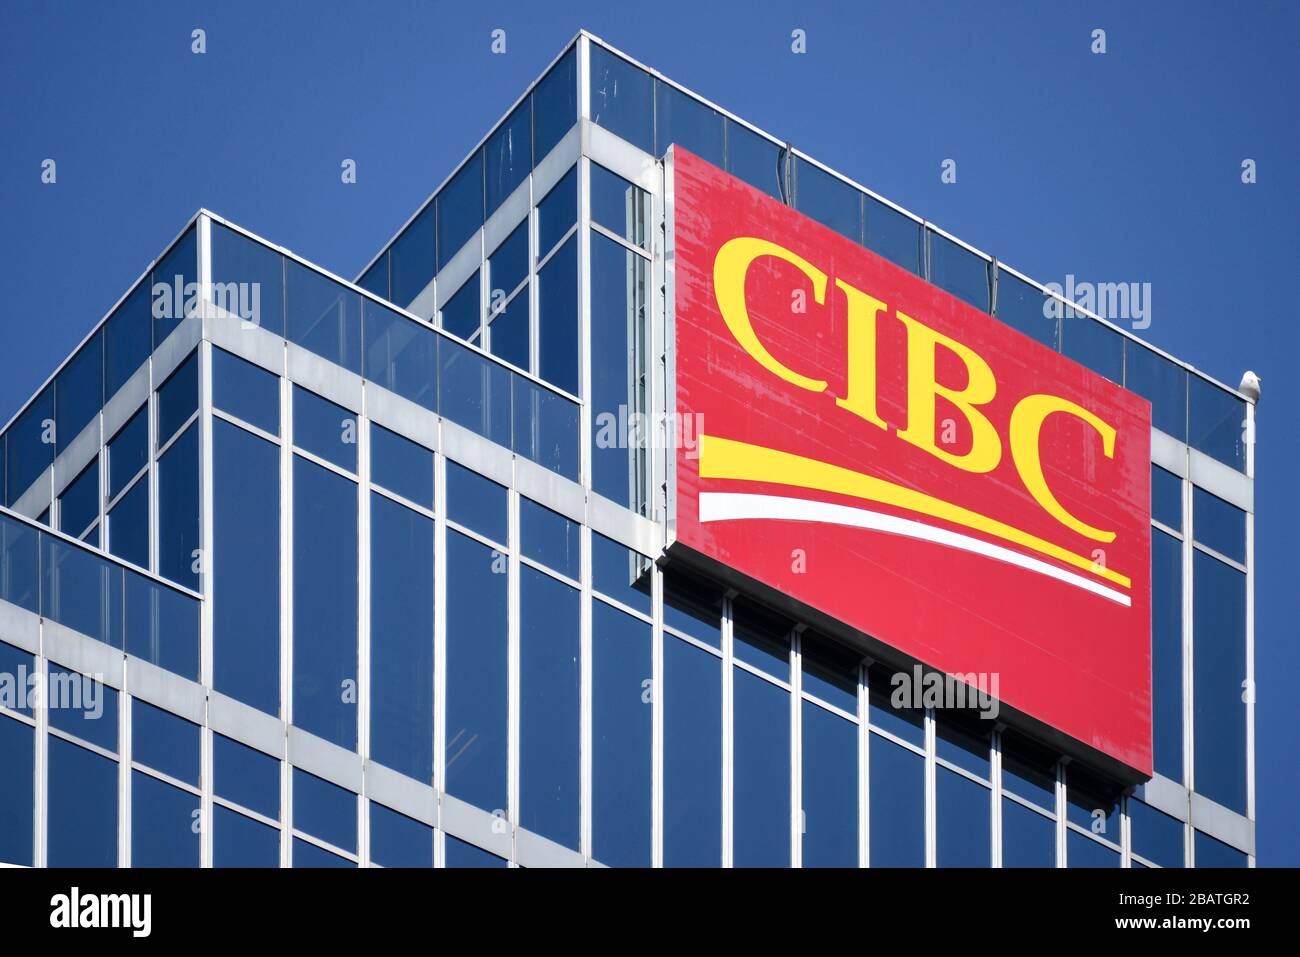 Vancouver, Canada - le 4 mars 2020 : la CIBC signe l'édifice au centre-ville de Vancouver. La Banque canadienne Impériale de Commerce est l’une des cinq grandes entreprises du Canada Banque D'Images